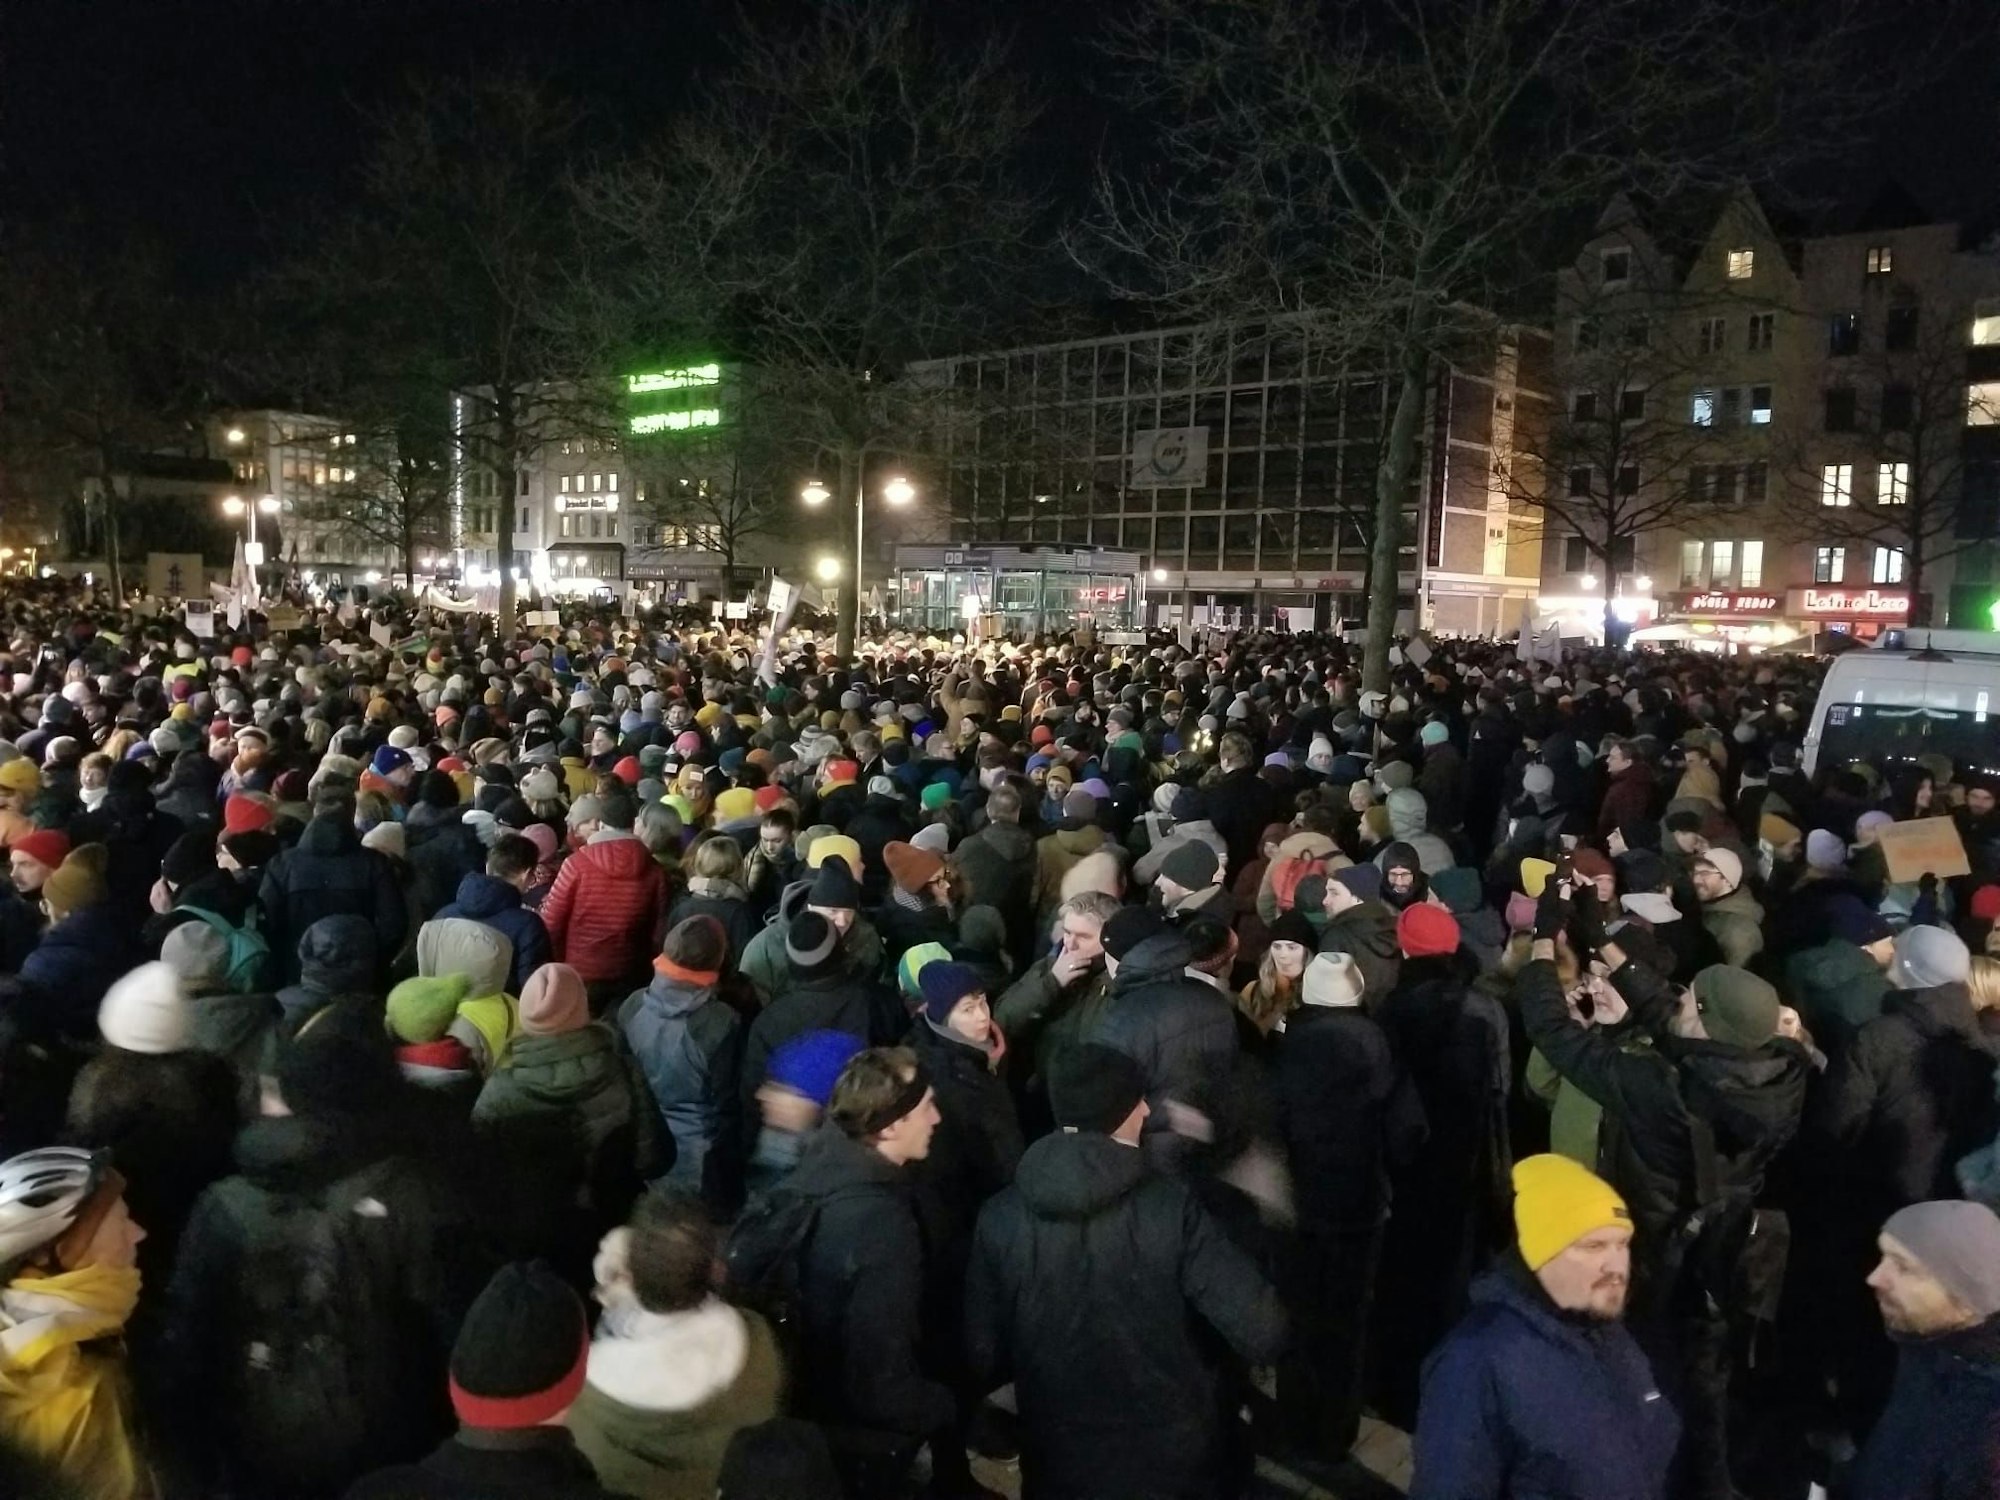 Der Kölner Heumarkt hat sich gegen 20 Uhr ordentlich gefüllt. Tausende Menschen demonstrieren gegen Rechts.